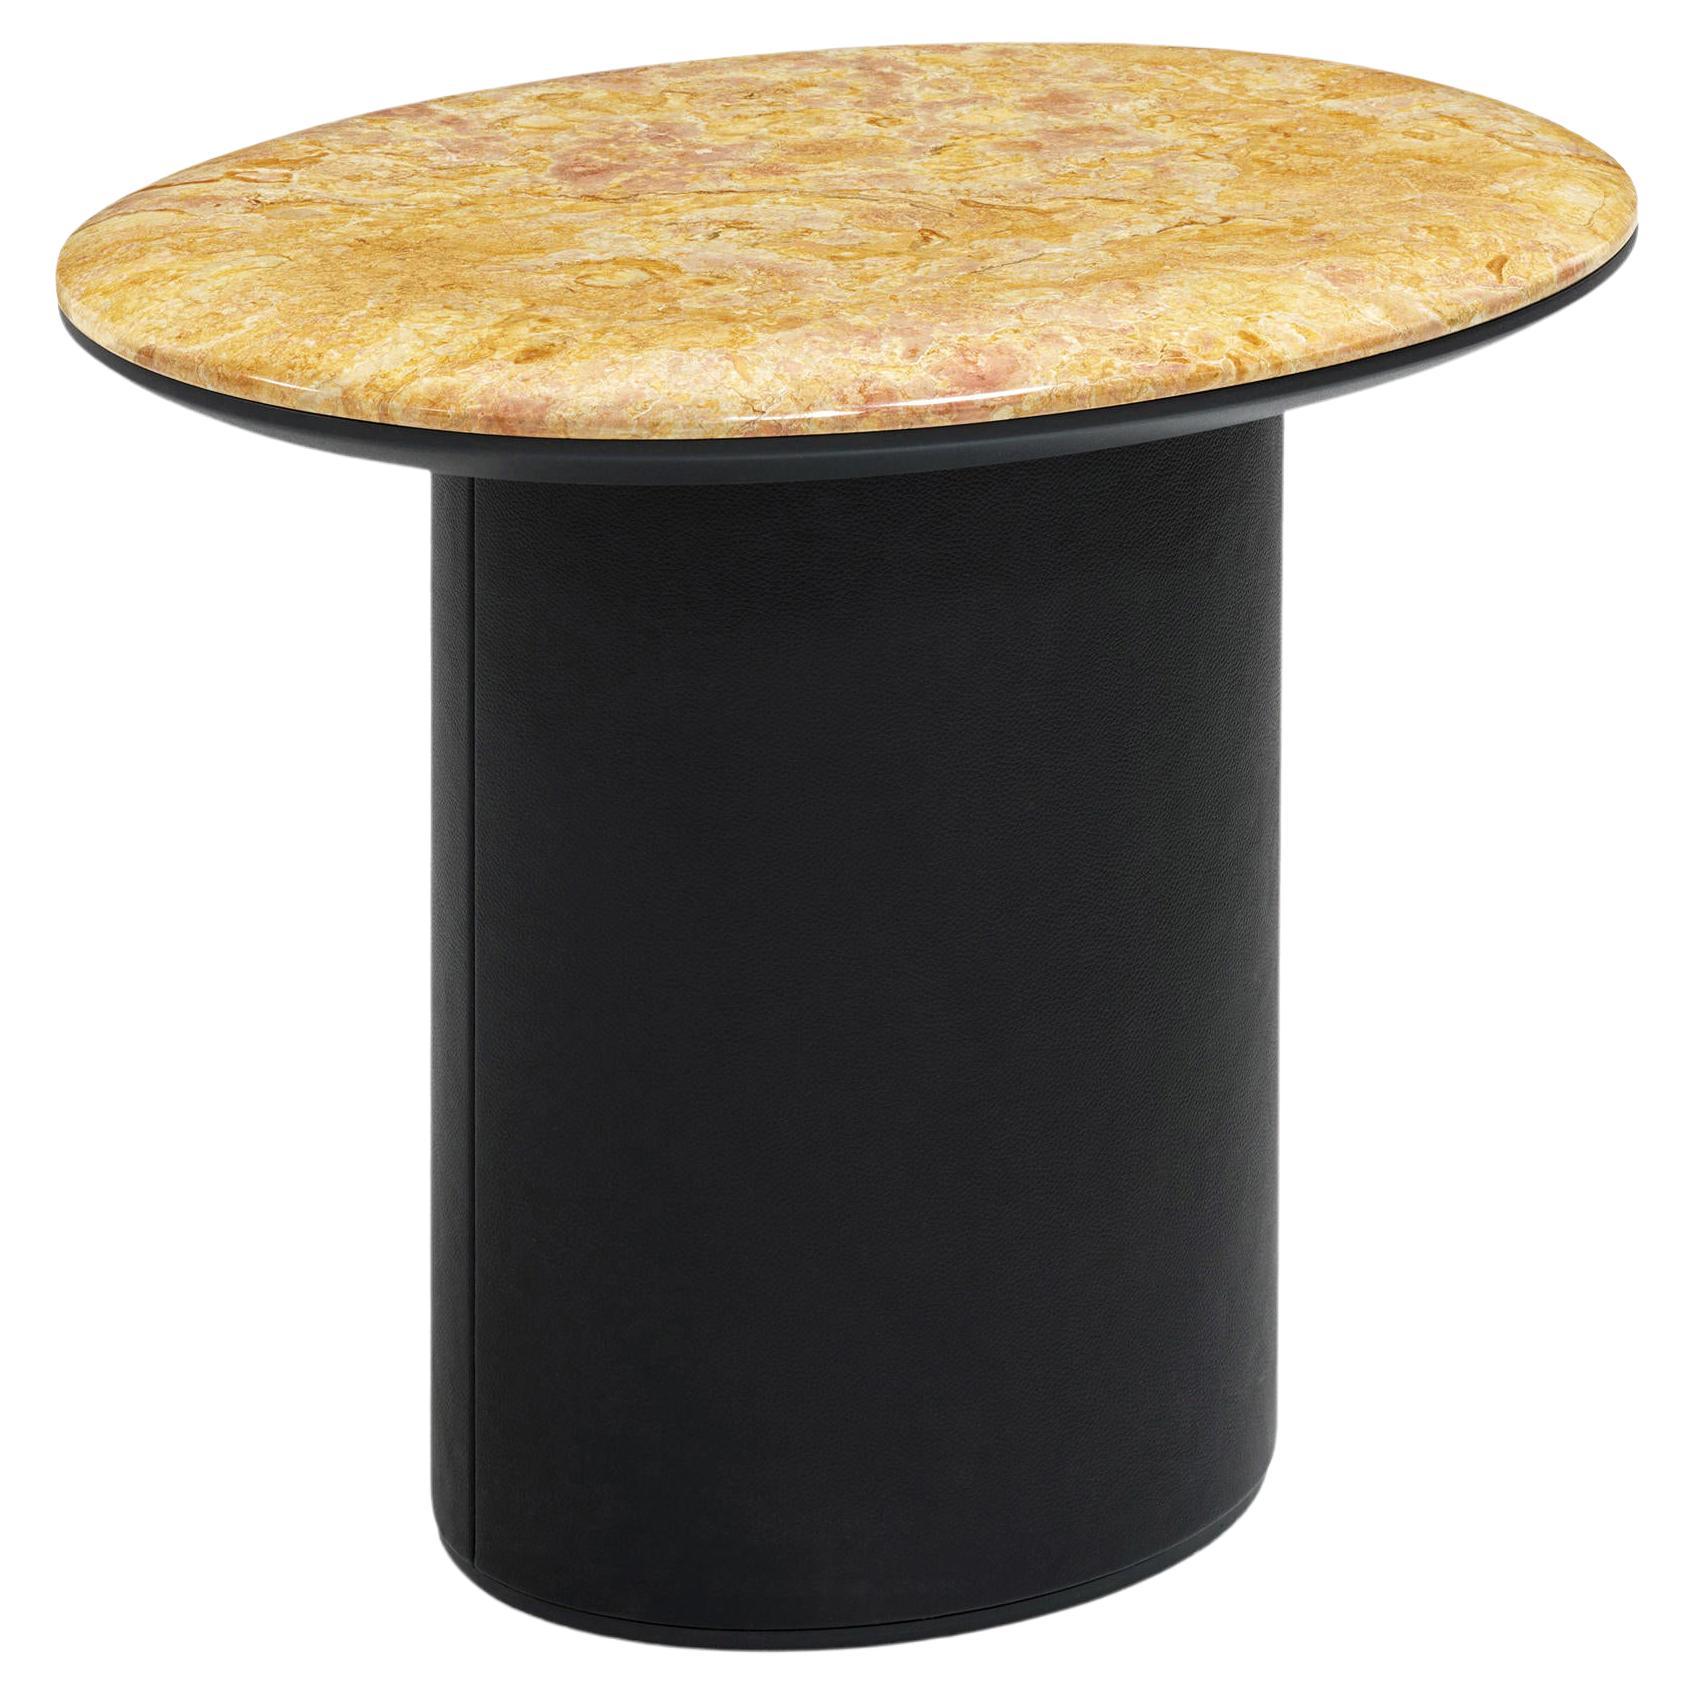 Wittmann Antilles-Tisch mit Marmorplatte entworfen von Luca Nichetto